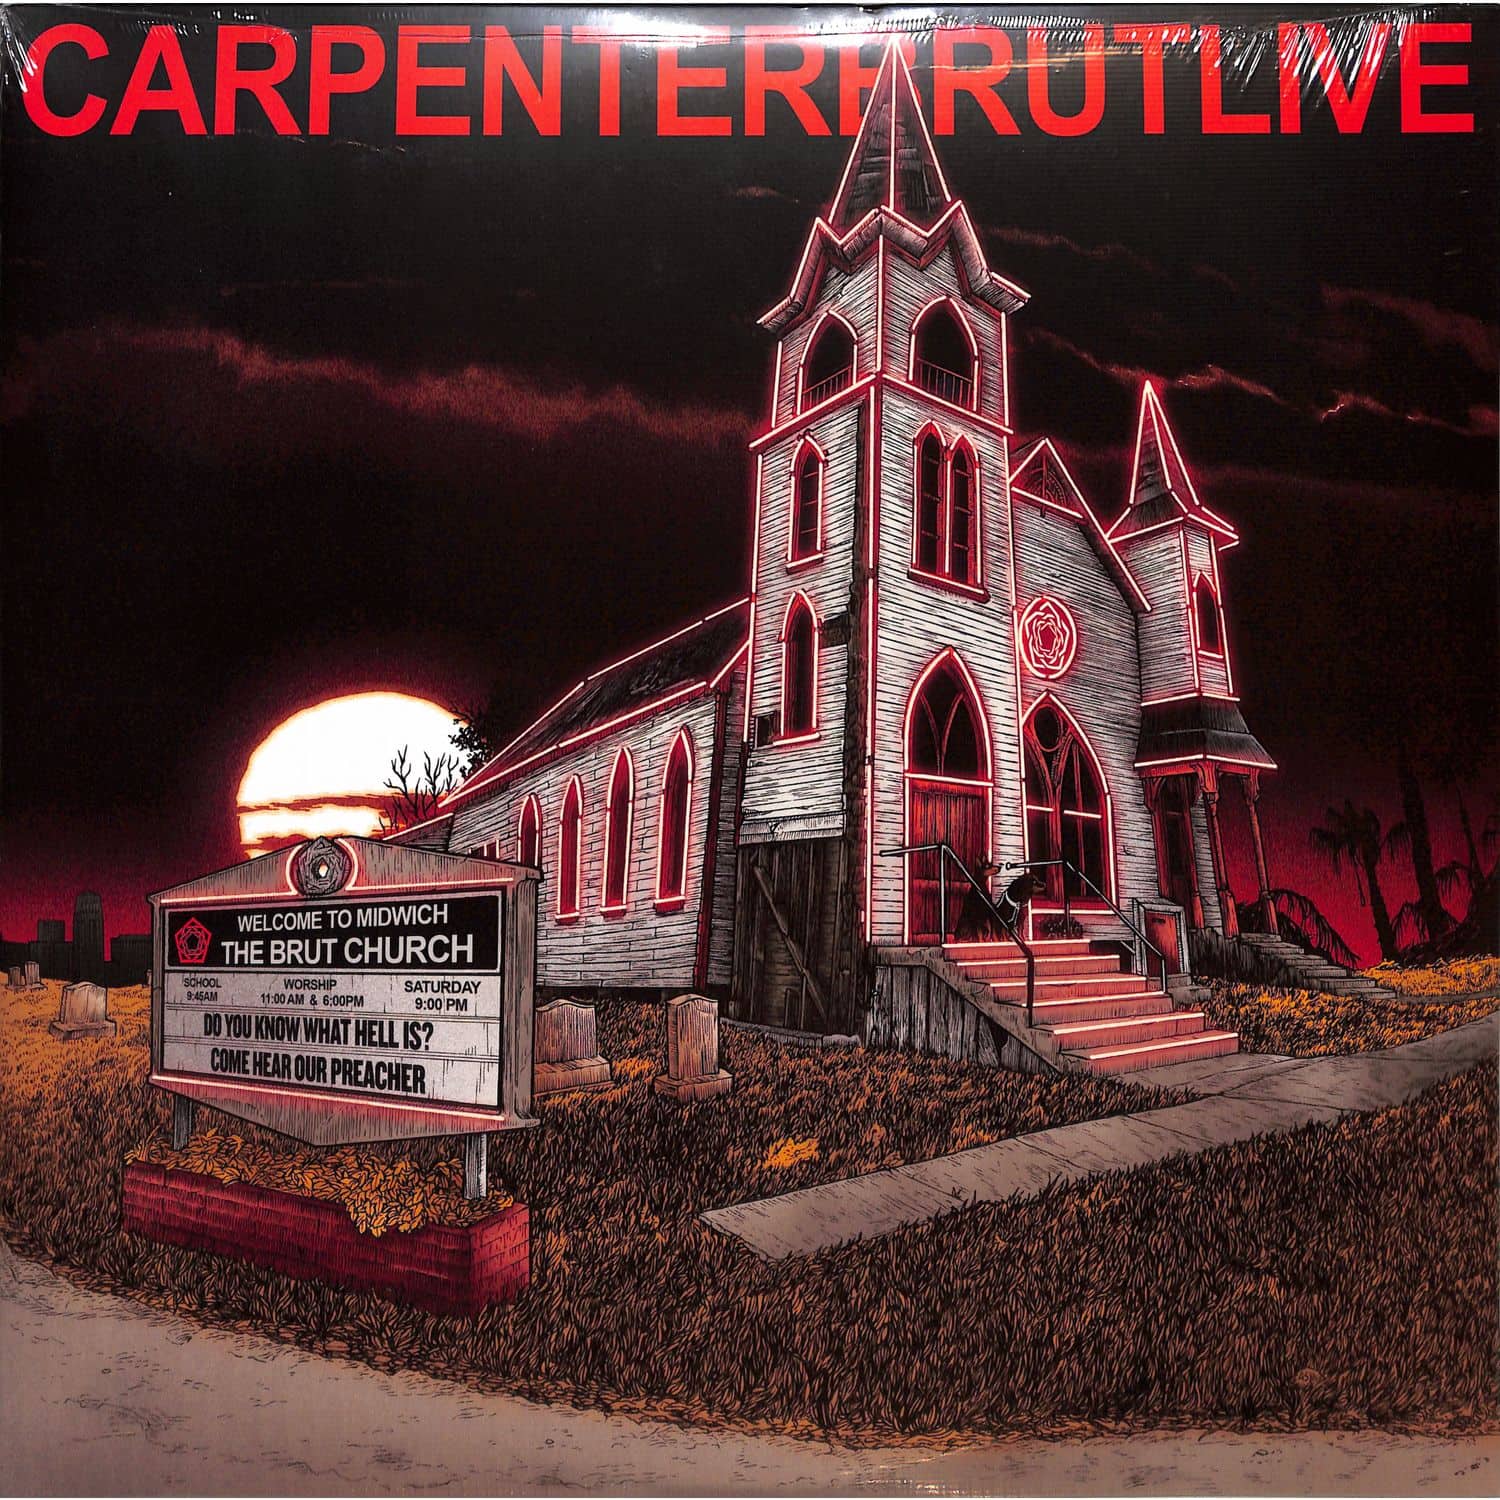 Carpenter Brut - CARPENTERBRUTLIVE 